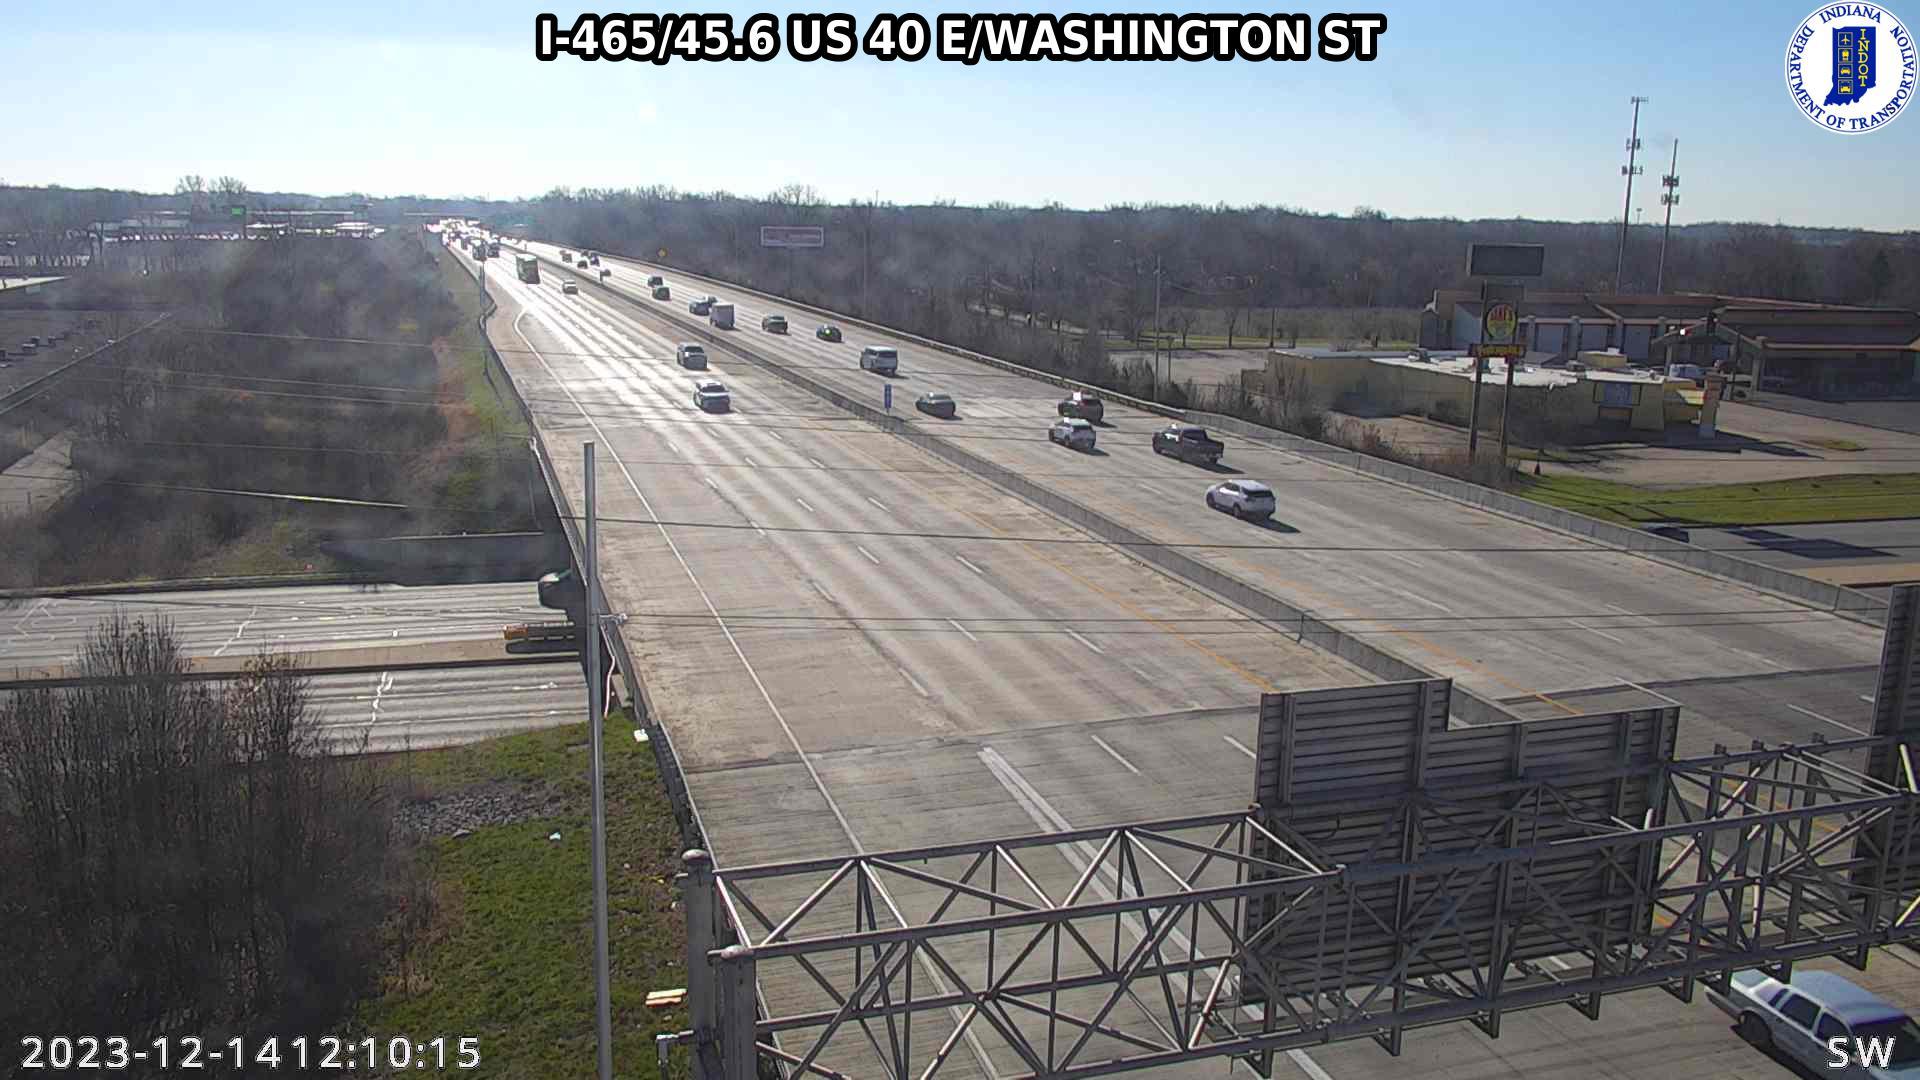 Indianapolis: I-465: I-465/45.6 US 40 E/WASHINGTON ST Traffic Camera